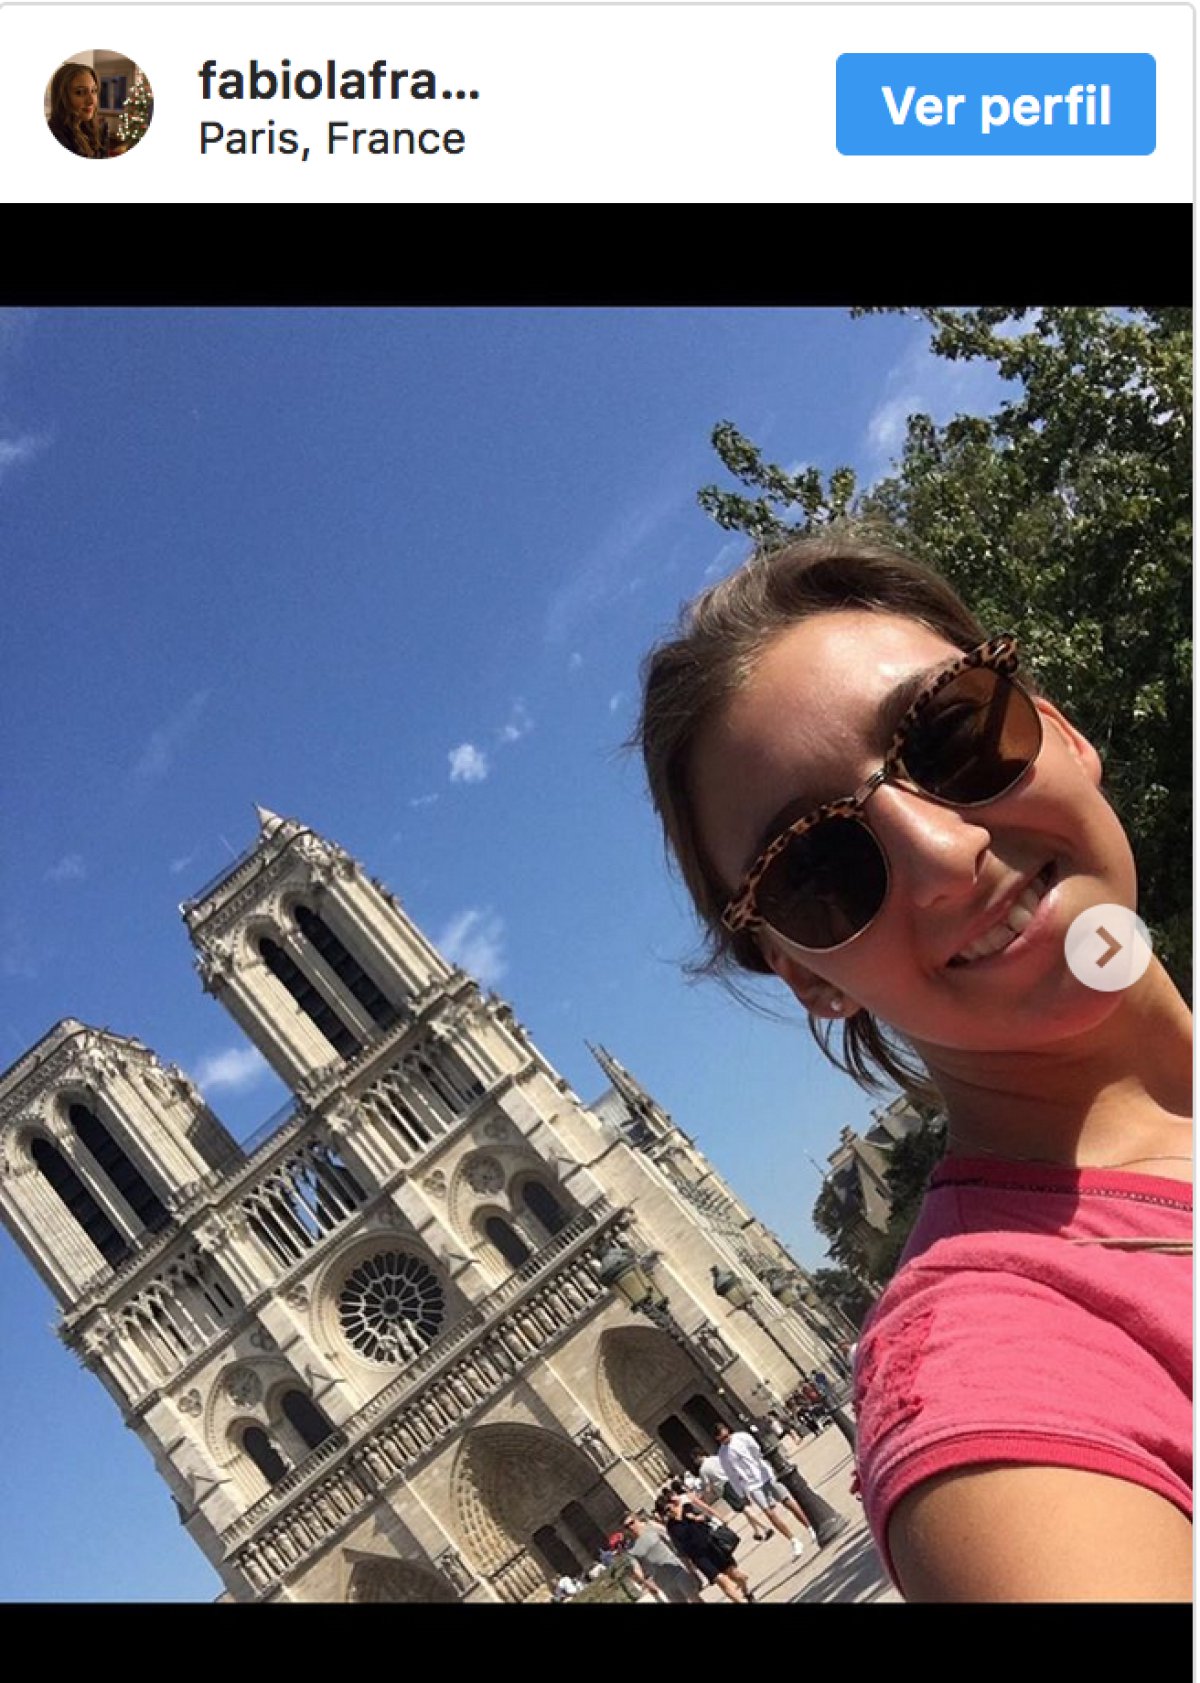 Después de la tragedia usuarios en redes recuerdan su visita a Notre Dame